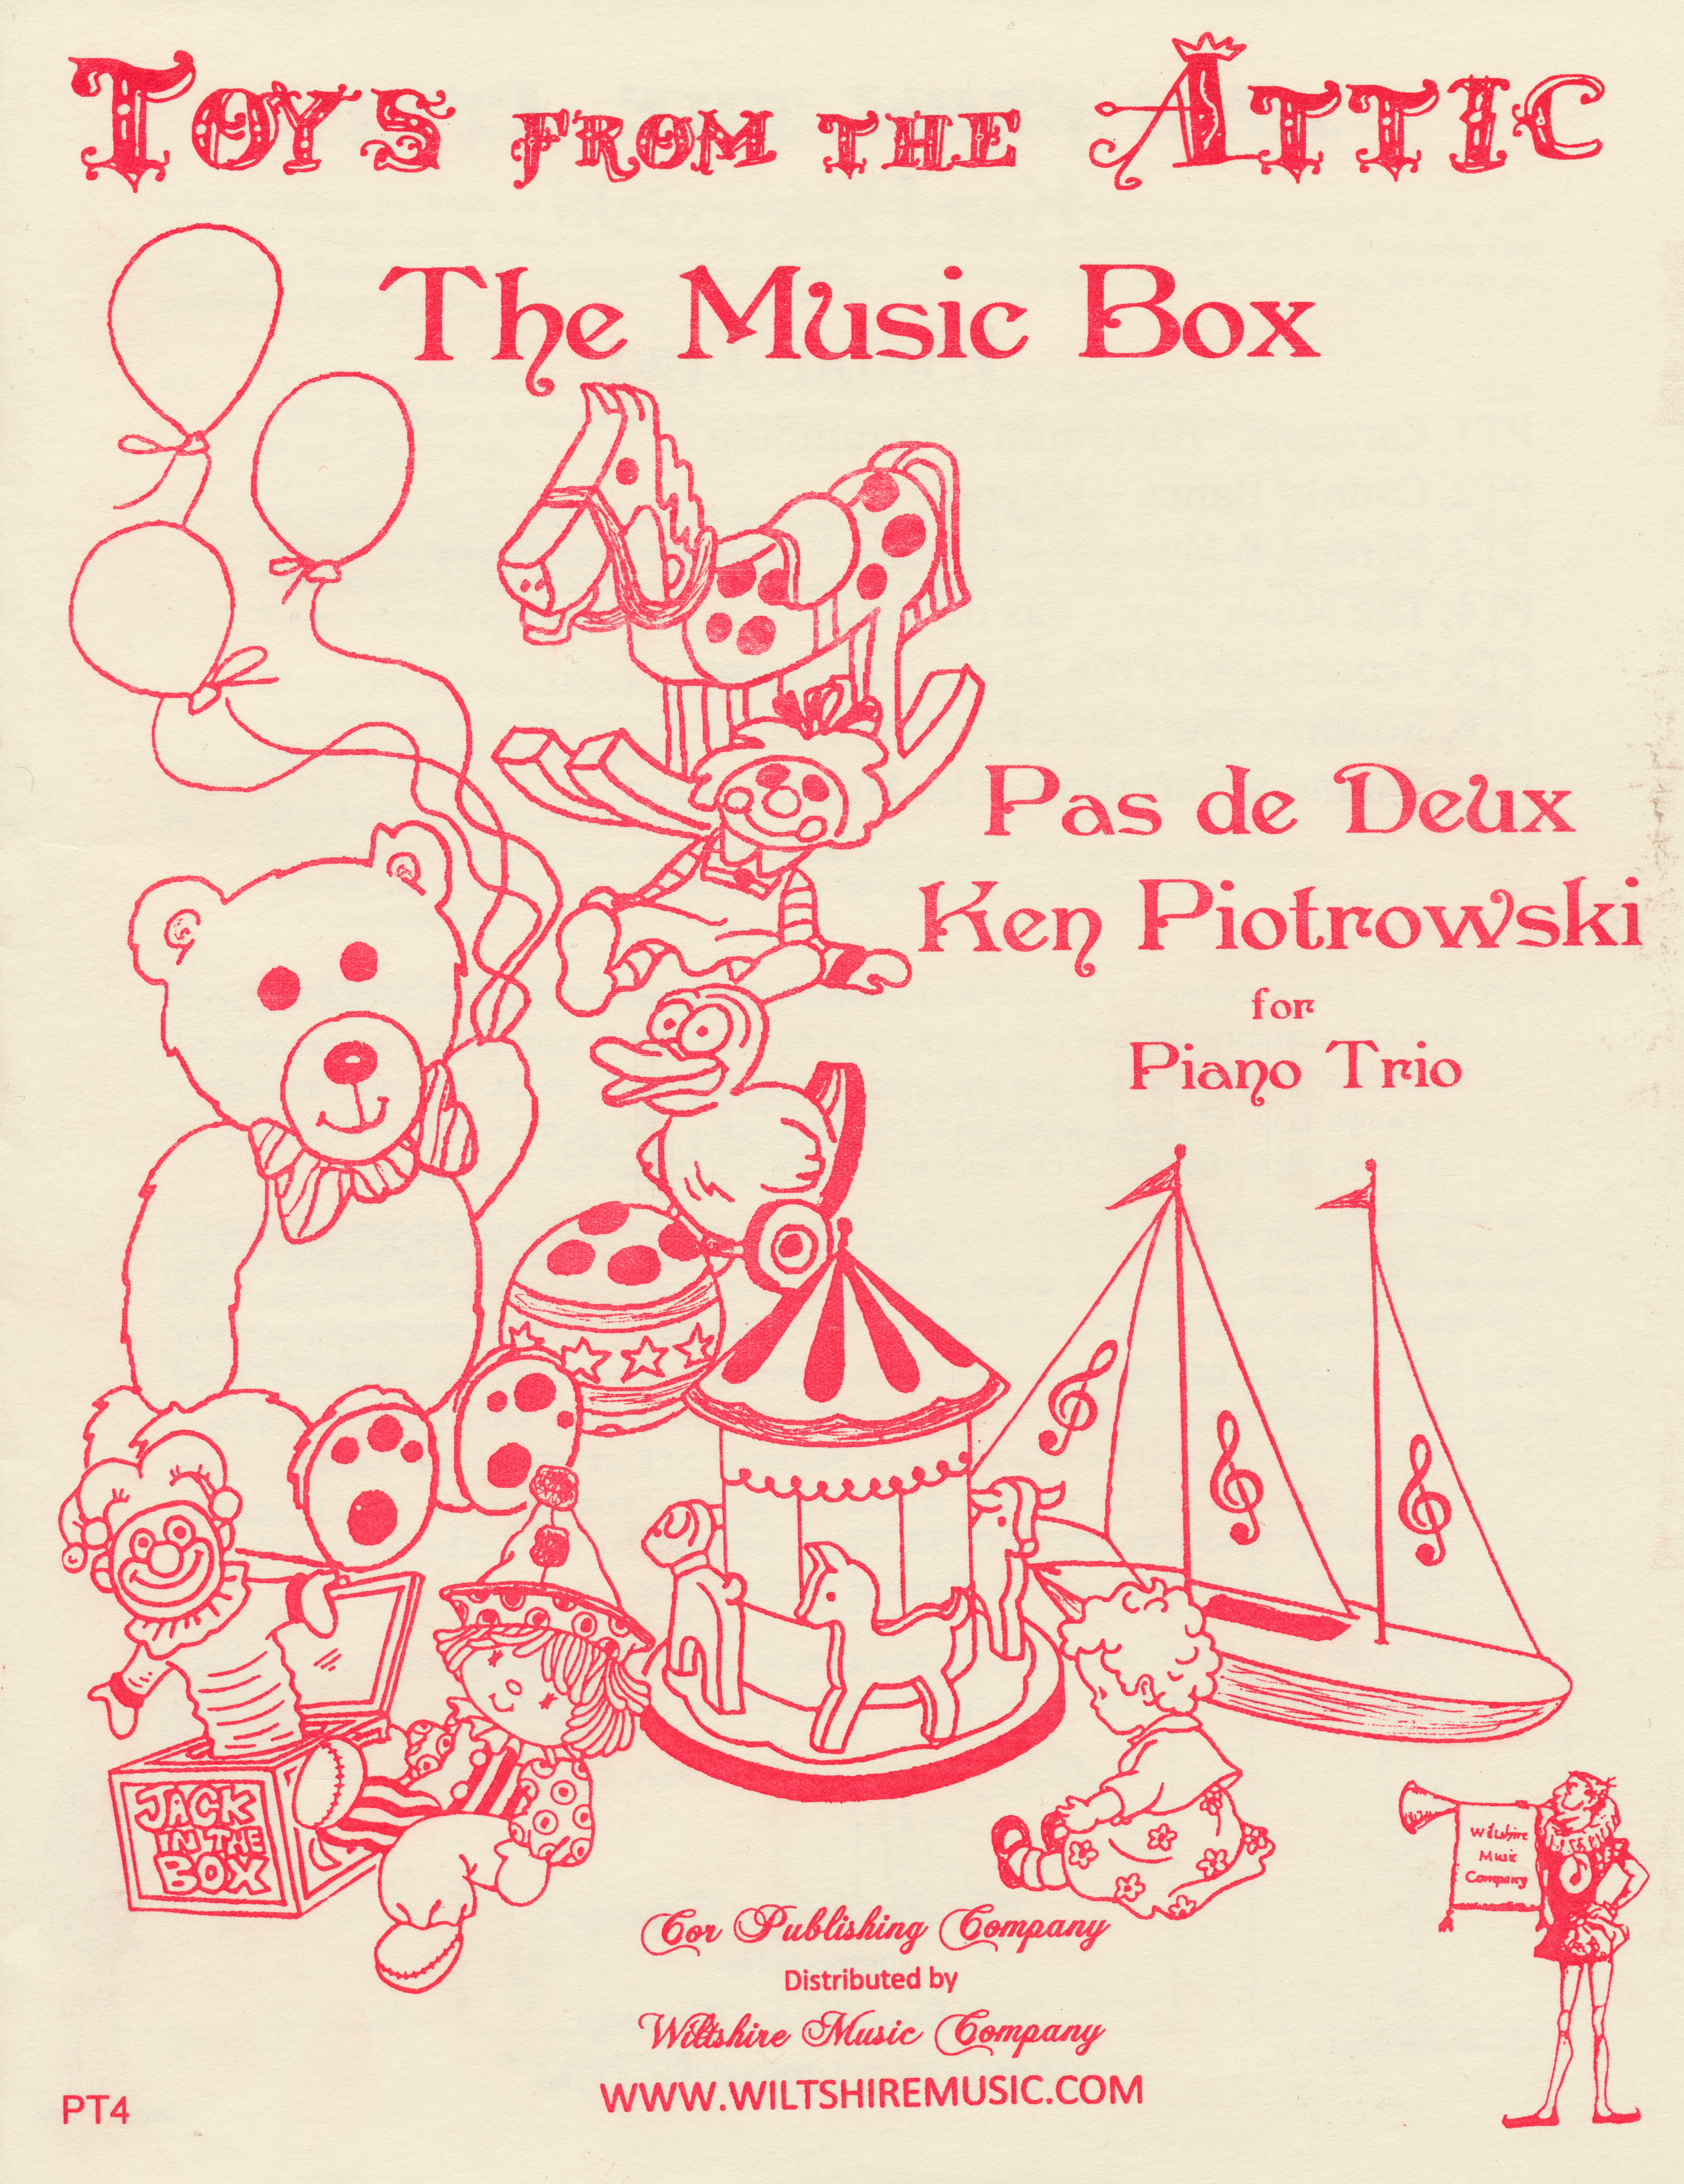 The Music Box, Pas de Deux, Ken Piotrowski, for Piano Trio